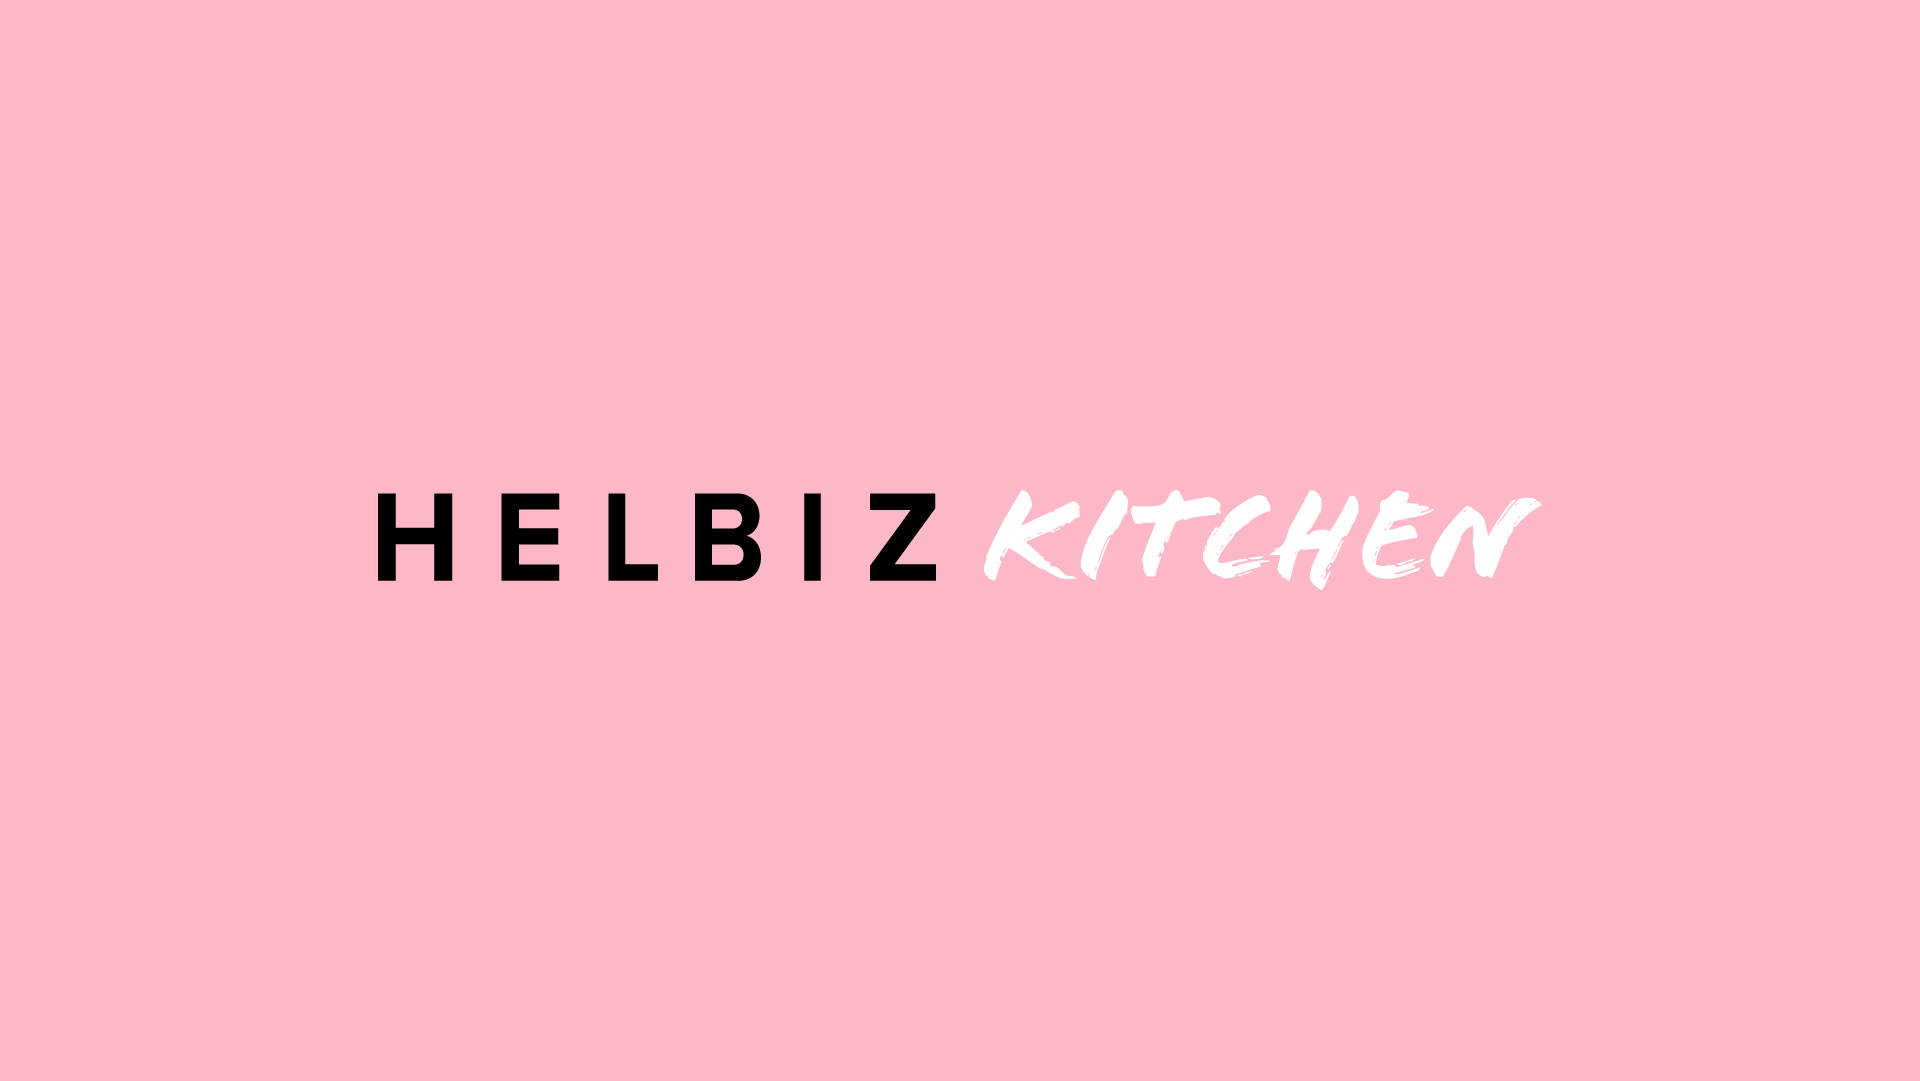 Helbiz Kitchen